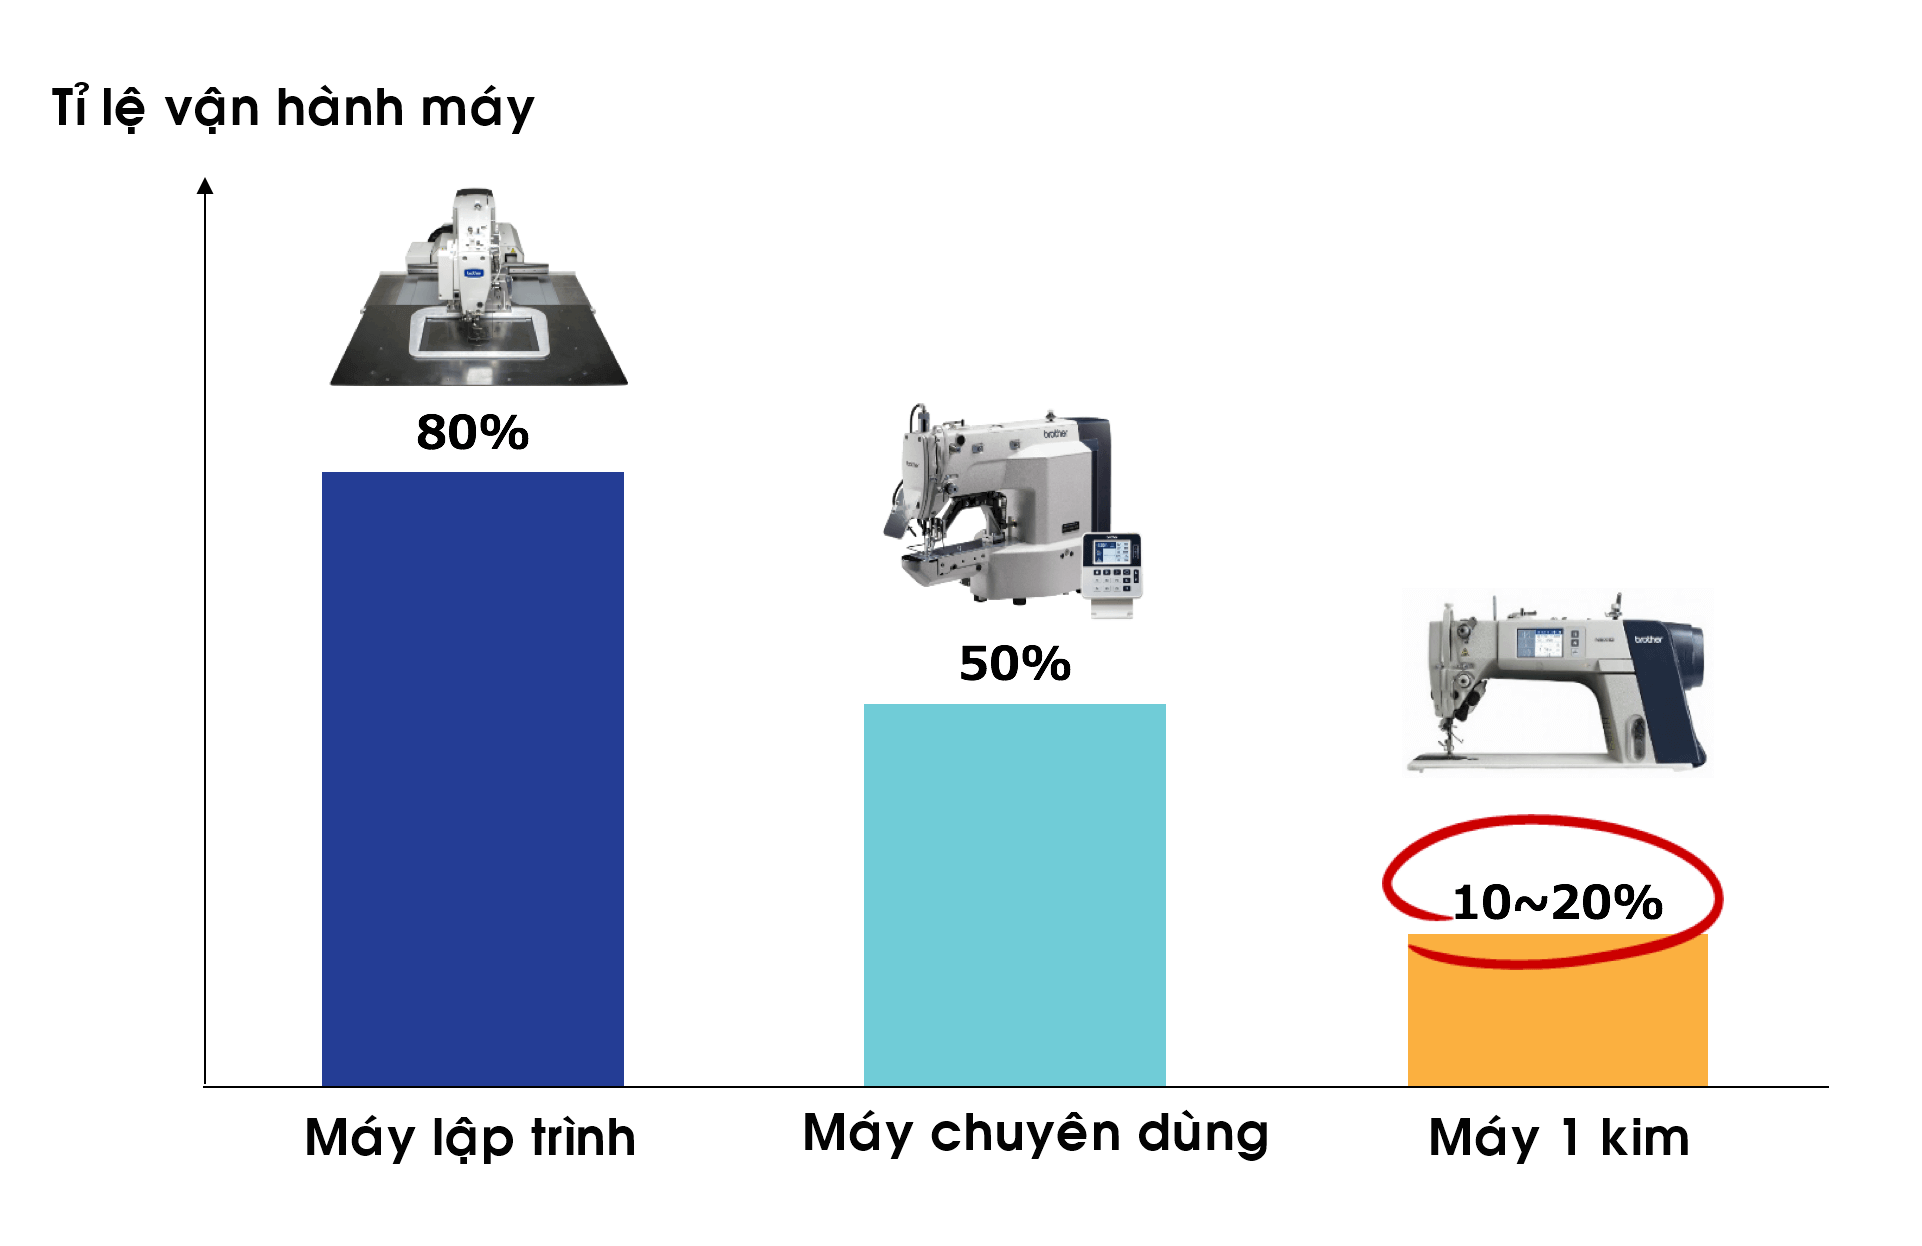 Tuy nhiên, máy 1 kim cũng hoạt động kém hiệu quả nhất. Khi nhìn vào tổng thời gian làm việc, loại máy này chỉ dành 10-20% tổng thời gian cho việc may.